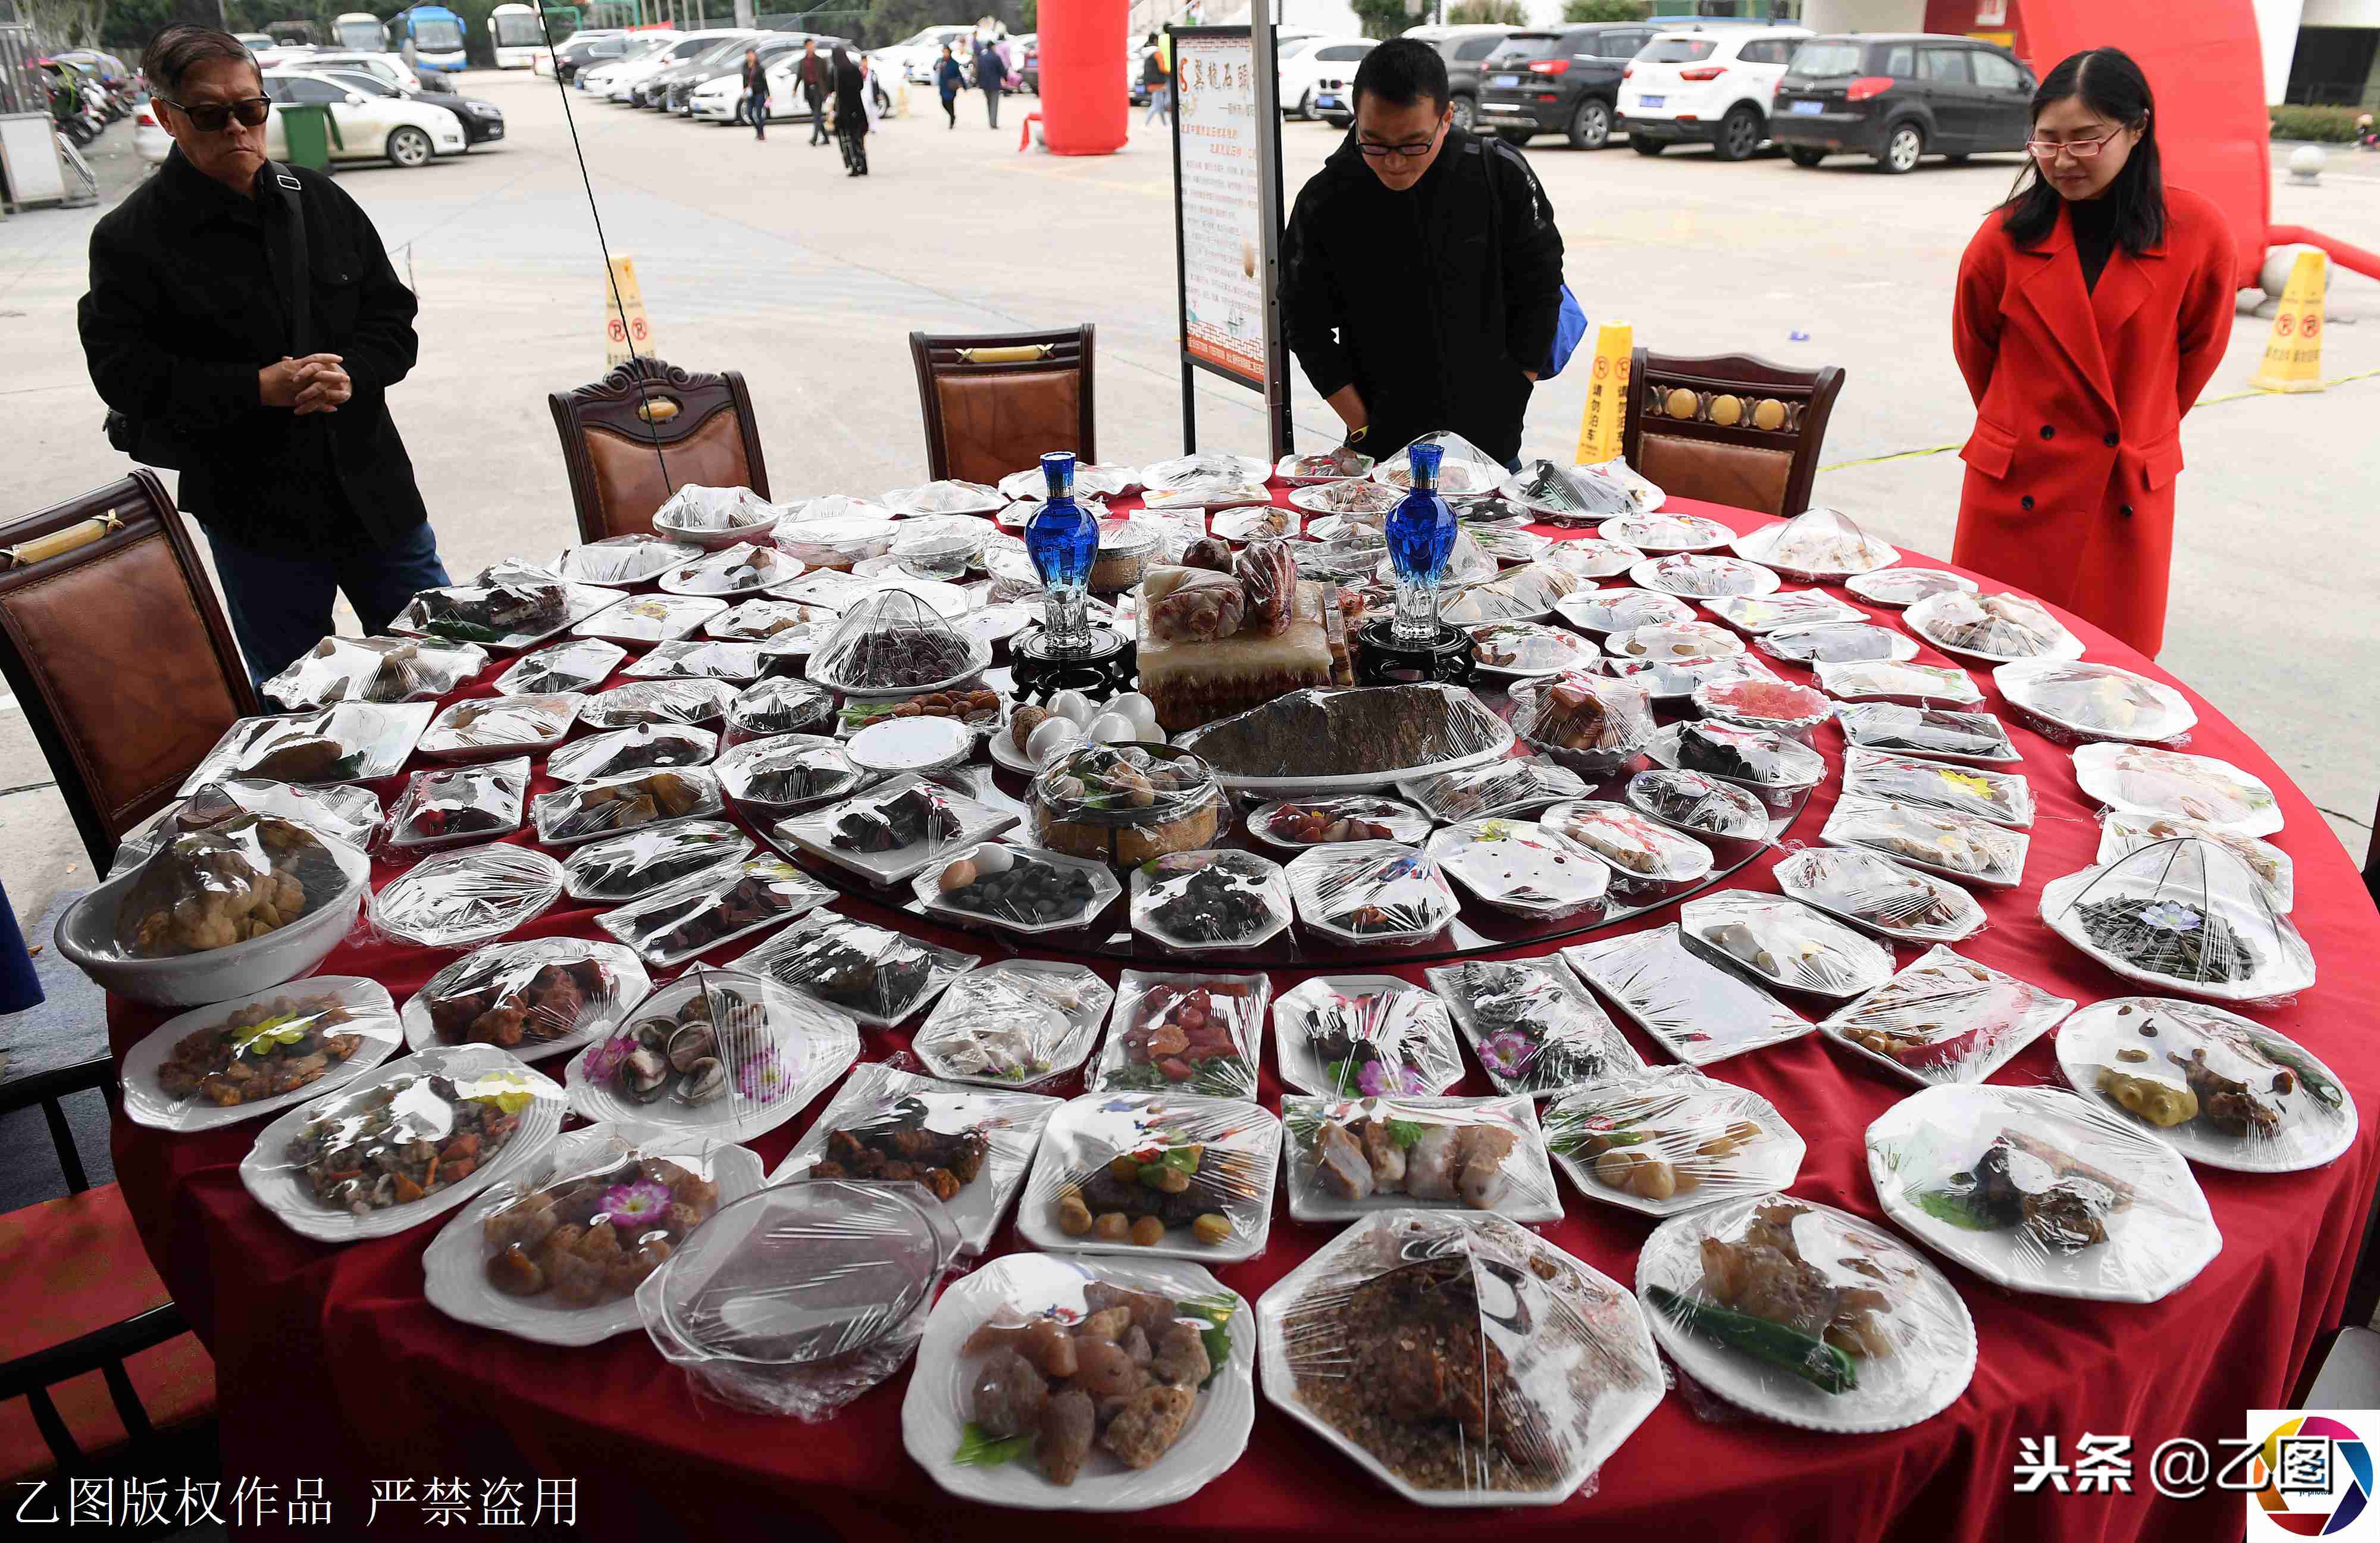 9桌石头拼成的“满汉全席”石头宴大比拼 价值38万到188万不等-搜狐大视野-搜狐新闻